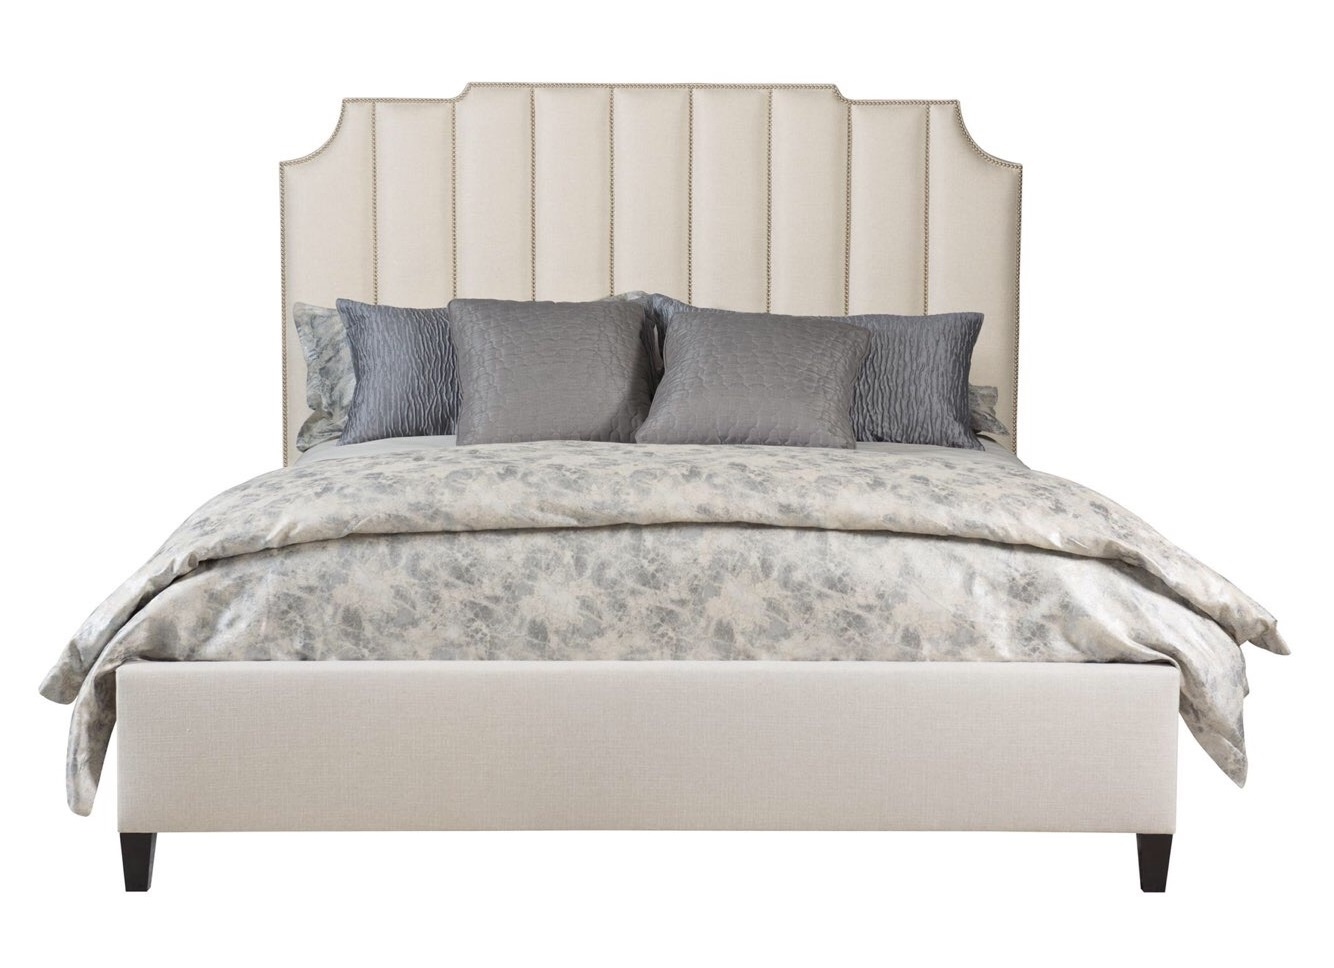 Мягкая кровать elmer idealbeds бежевый 170x173x212 см.